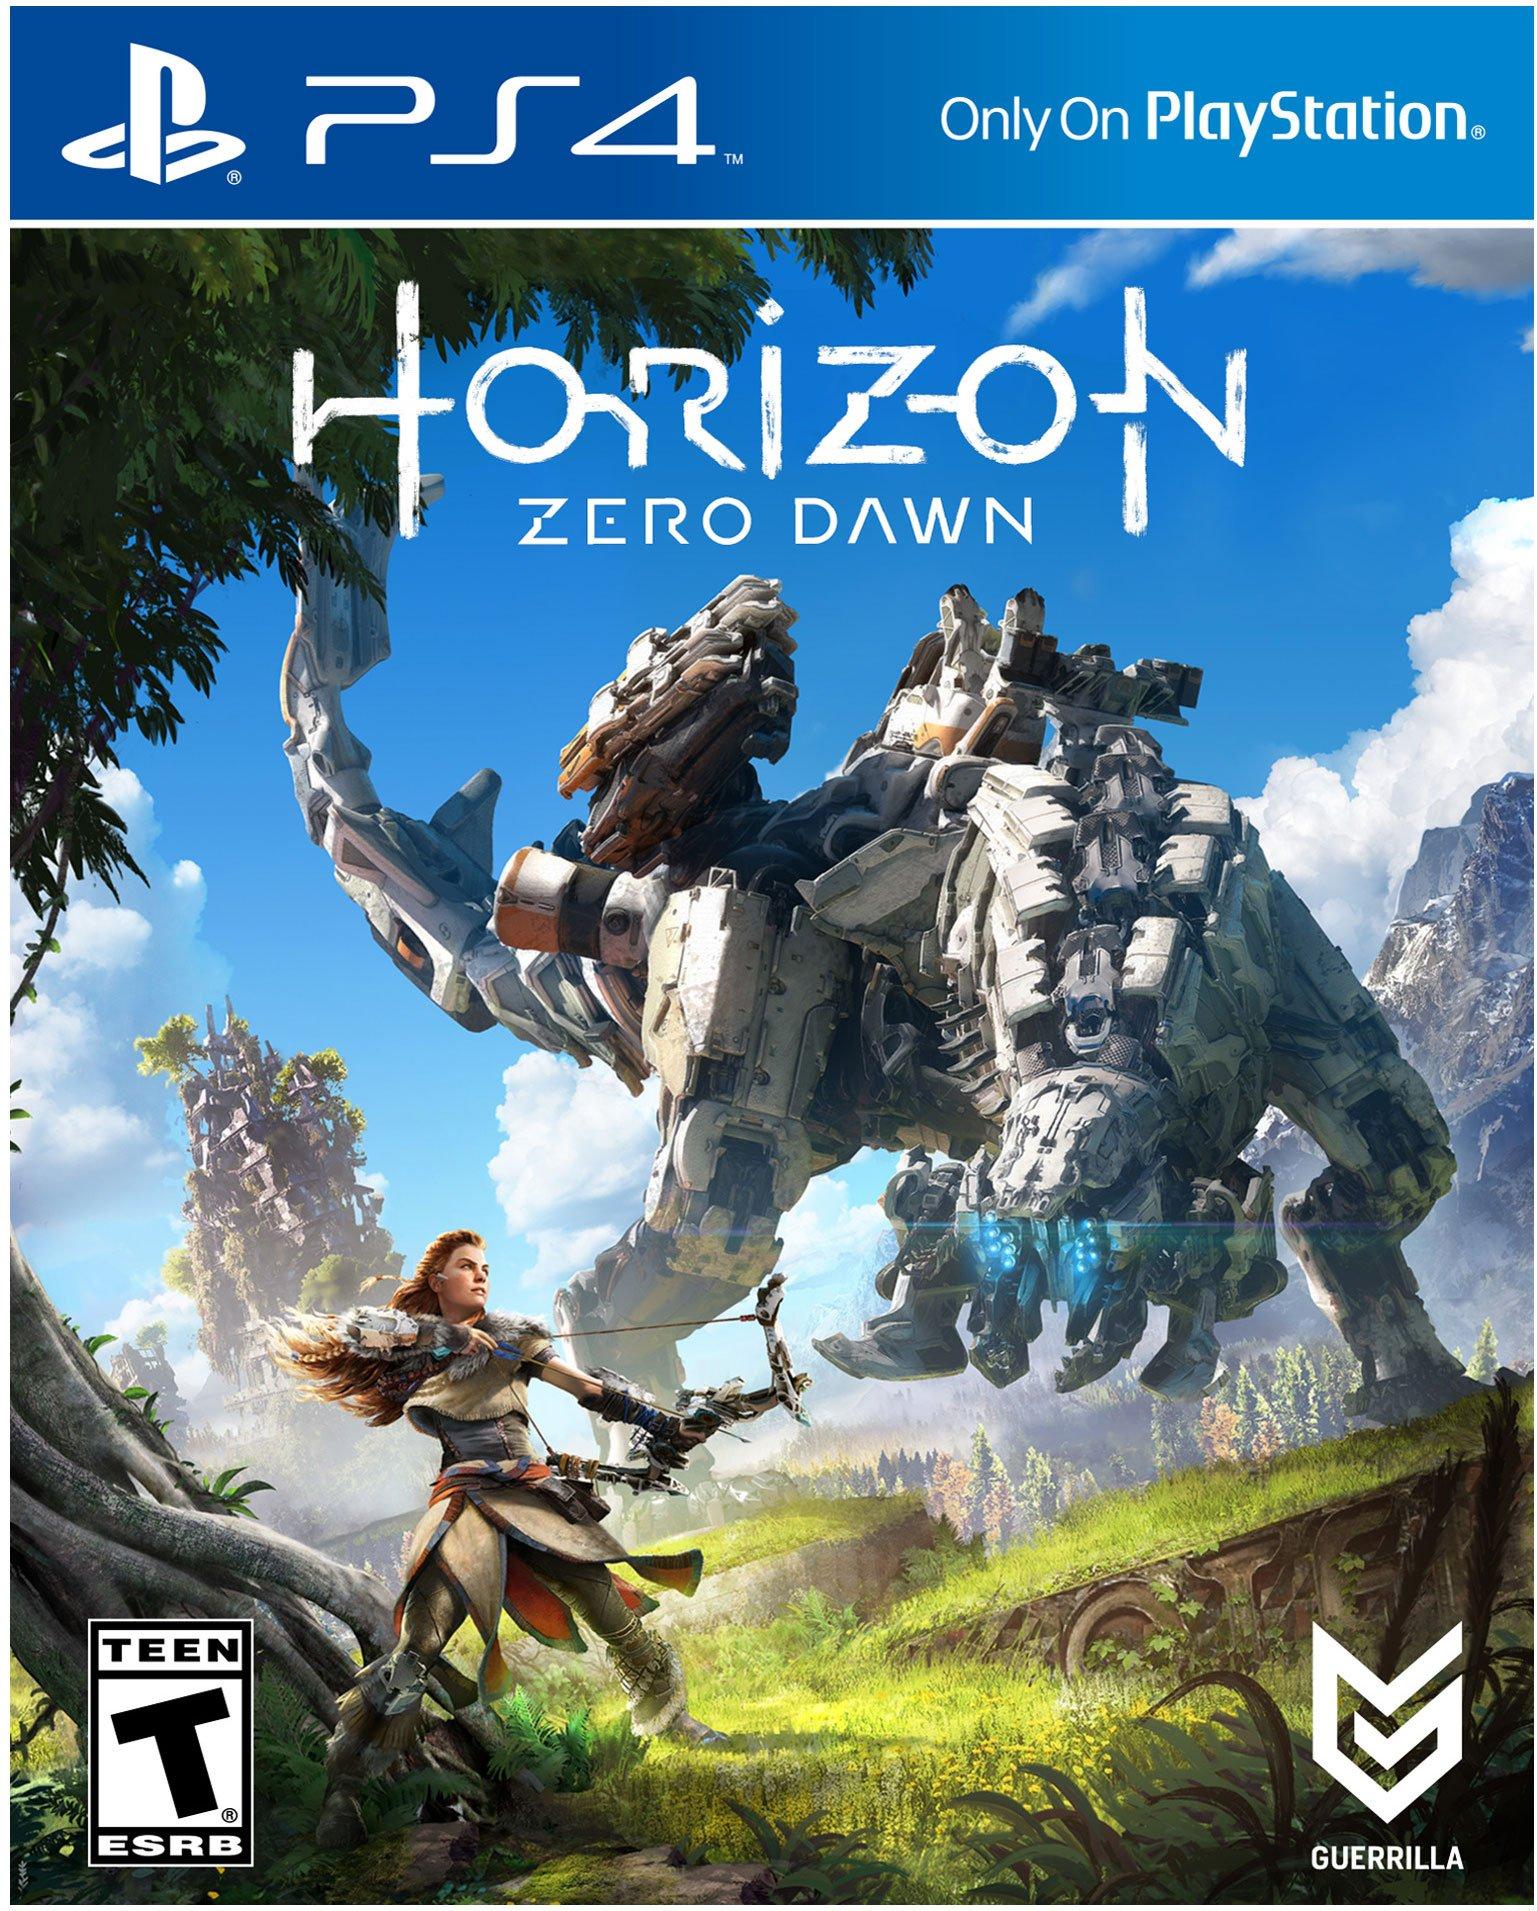 Horizon Zero Dawn Complete Edition - PC Steam | GameStop